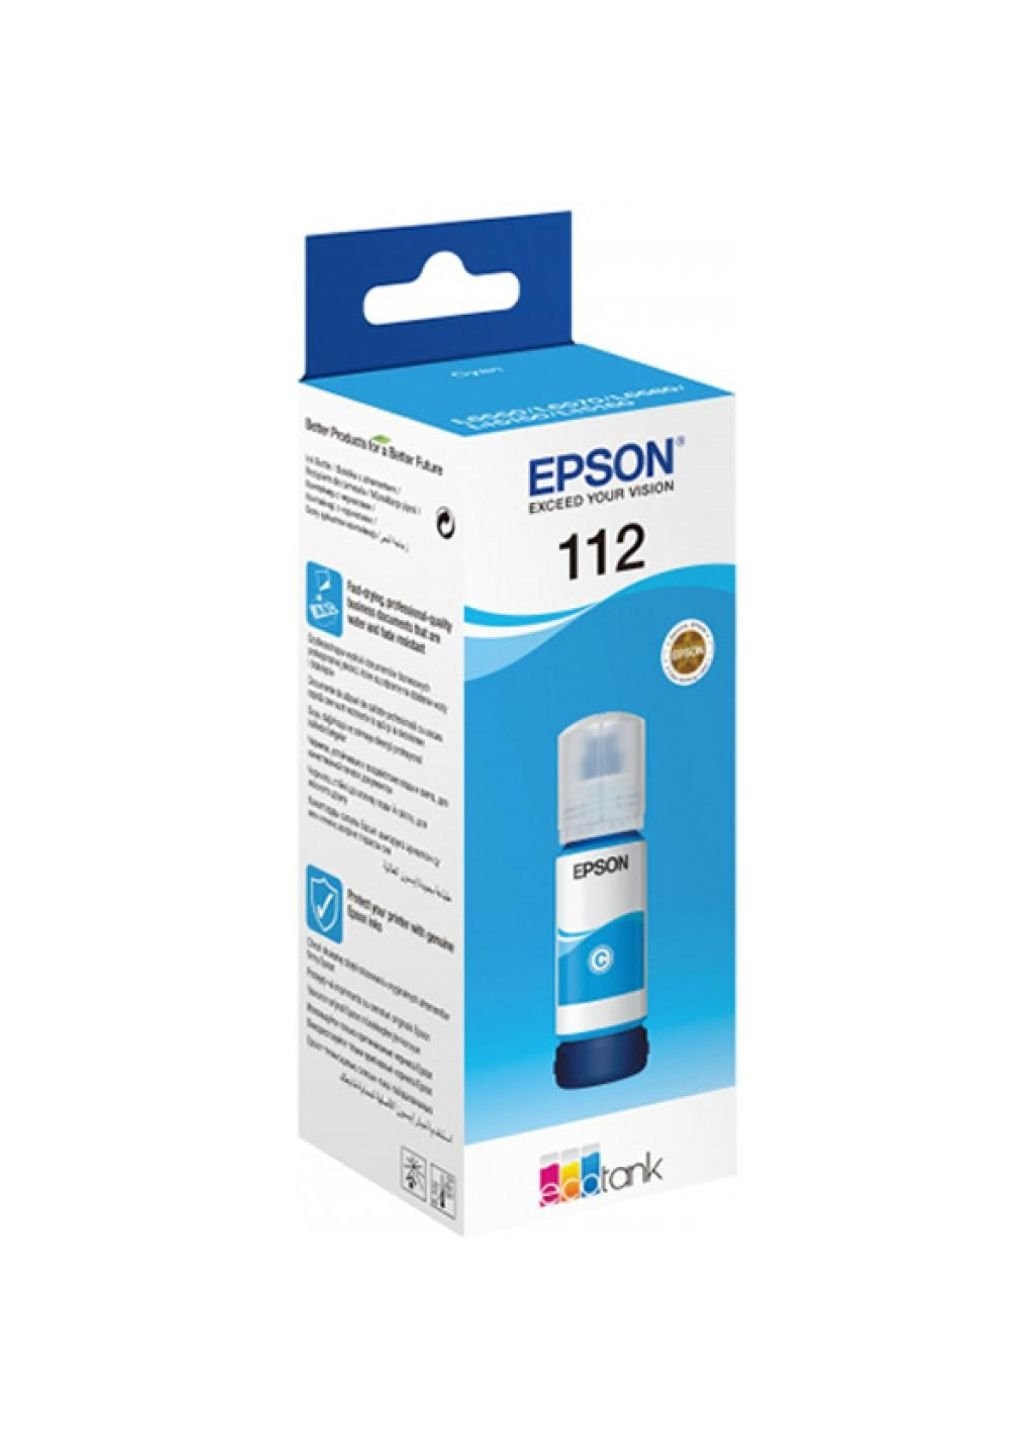 Контейнер с чернилами (C13T06C24A) Epson 112 ecotank pigment cyan ink (247485582)